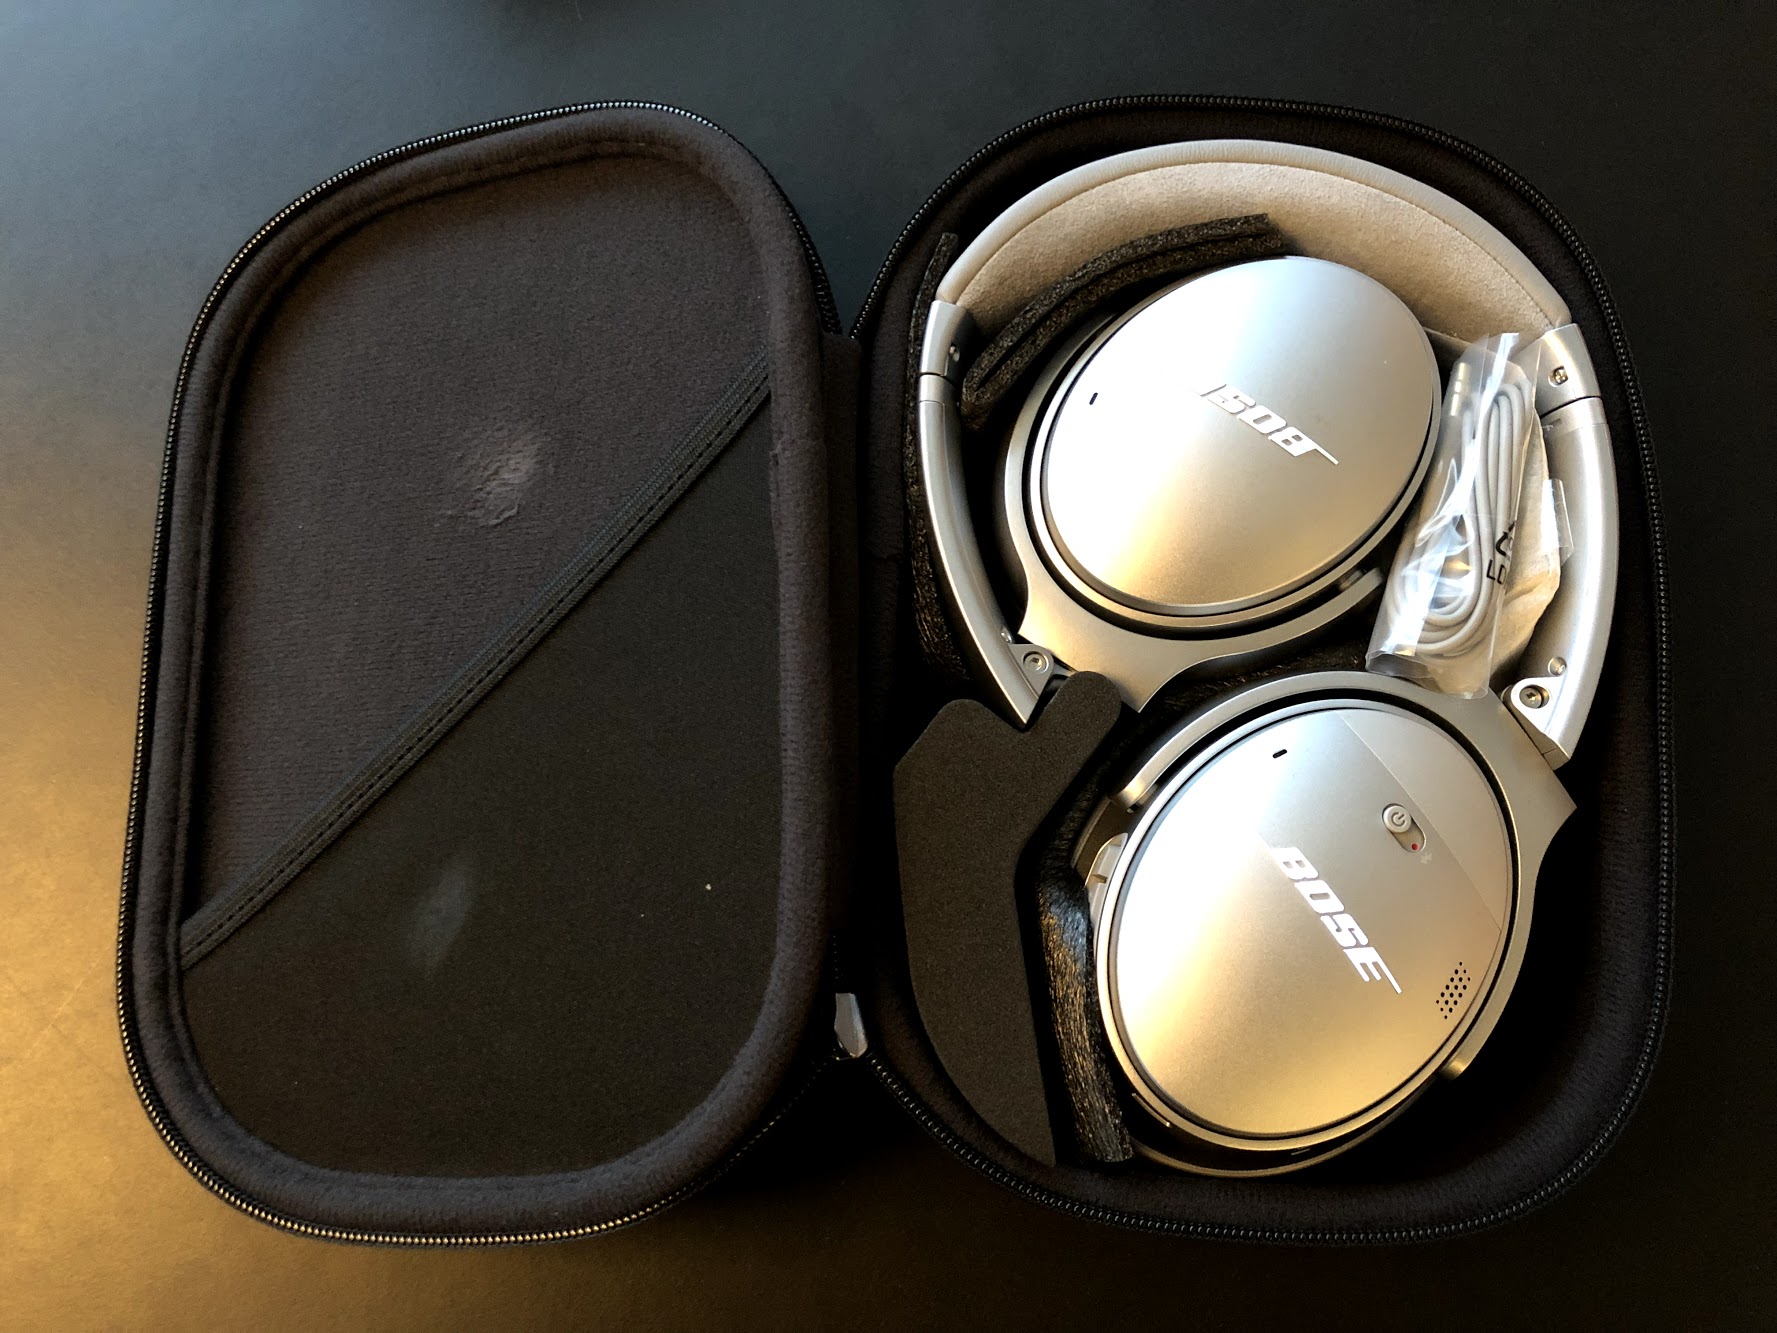 Bose QuietComfort 35 II QC35 2 silver black sort sølv test af anmeldelse erfaring problemer, hvordan virker støjreducerende høretelefoner noise cancellation cancelling noise reduction støjreducerende hørebøffer